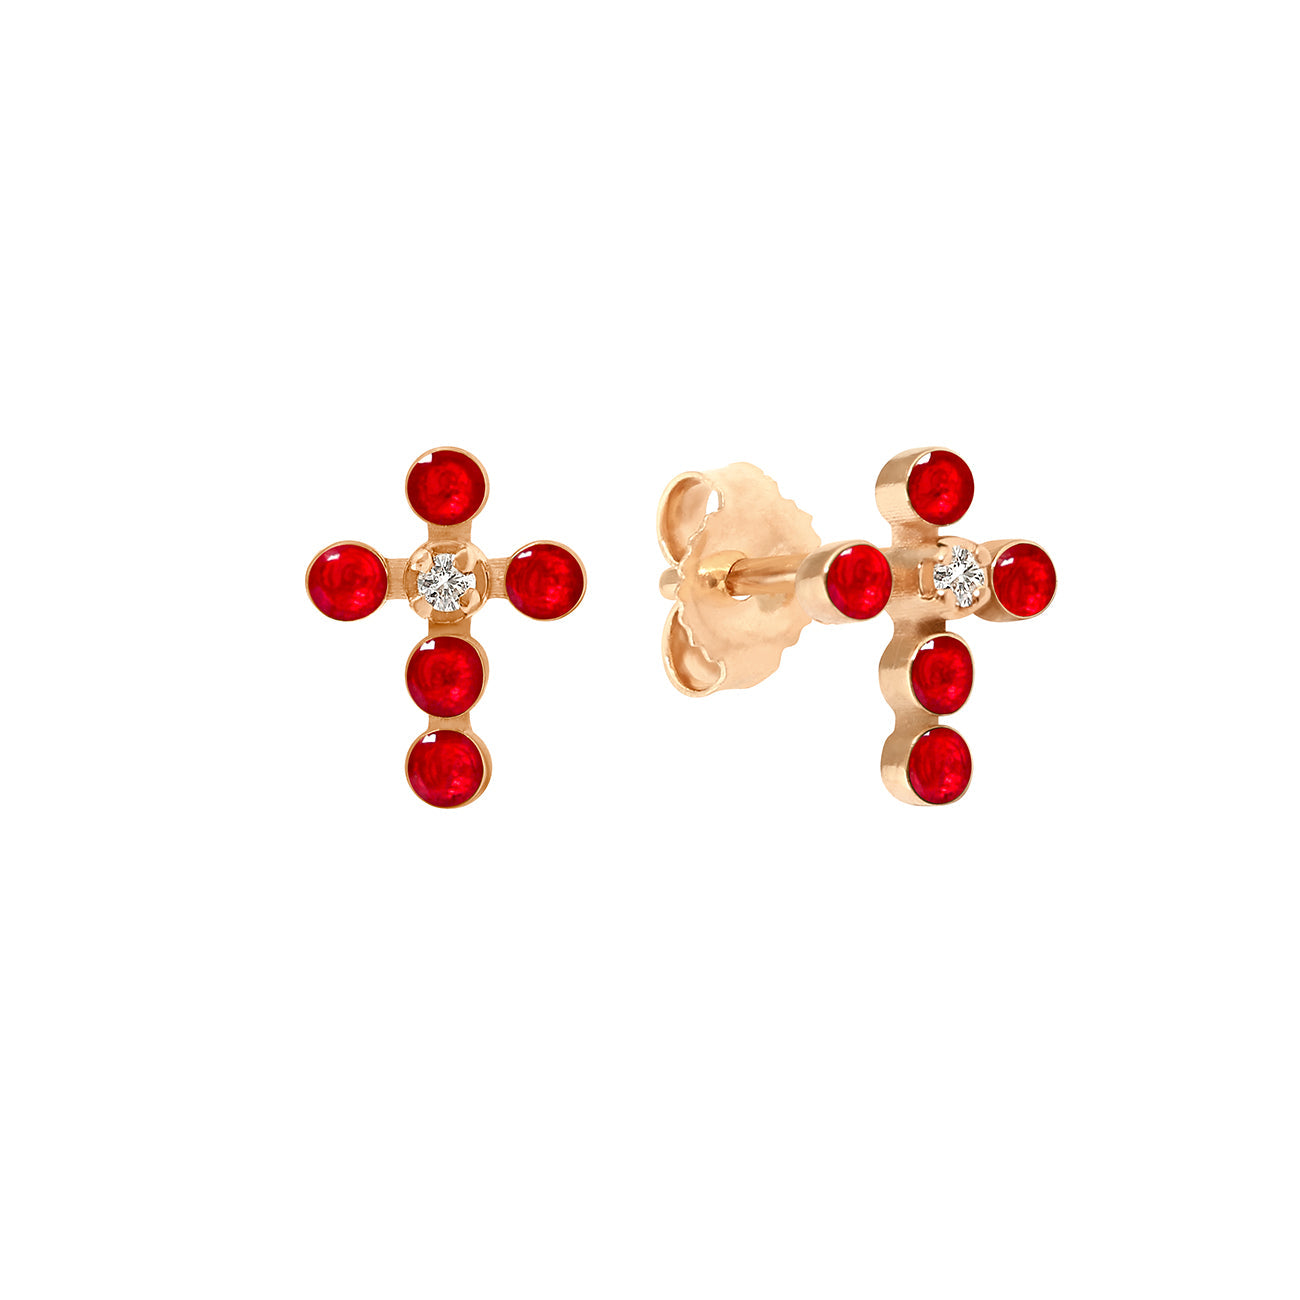 Gigi Clozeau - Pearled Cross Diamond Earrings, Ruby, Rose Gold